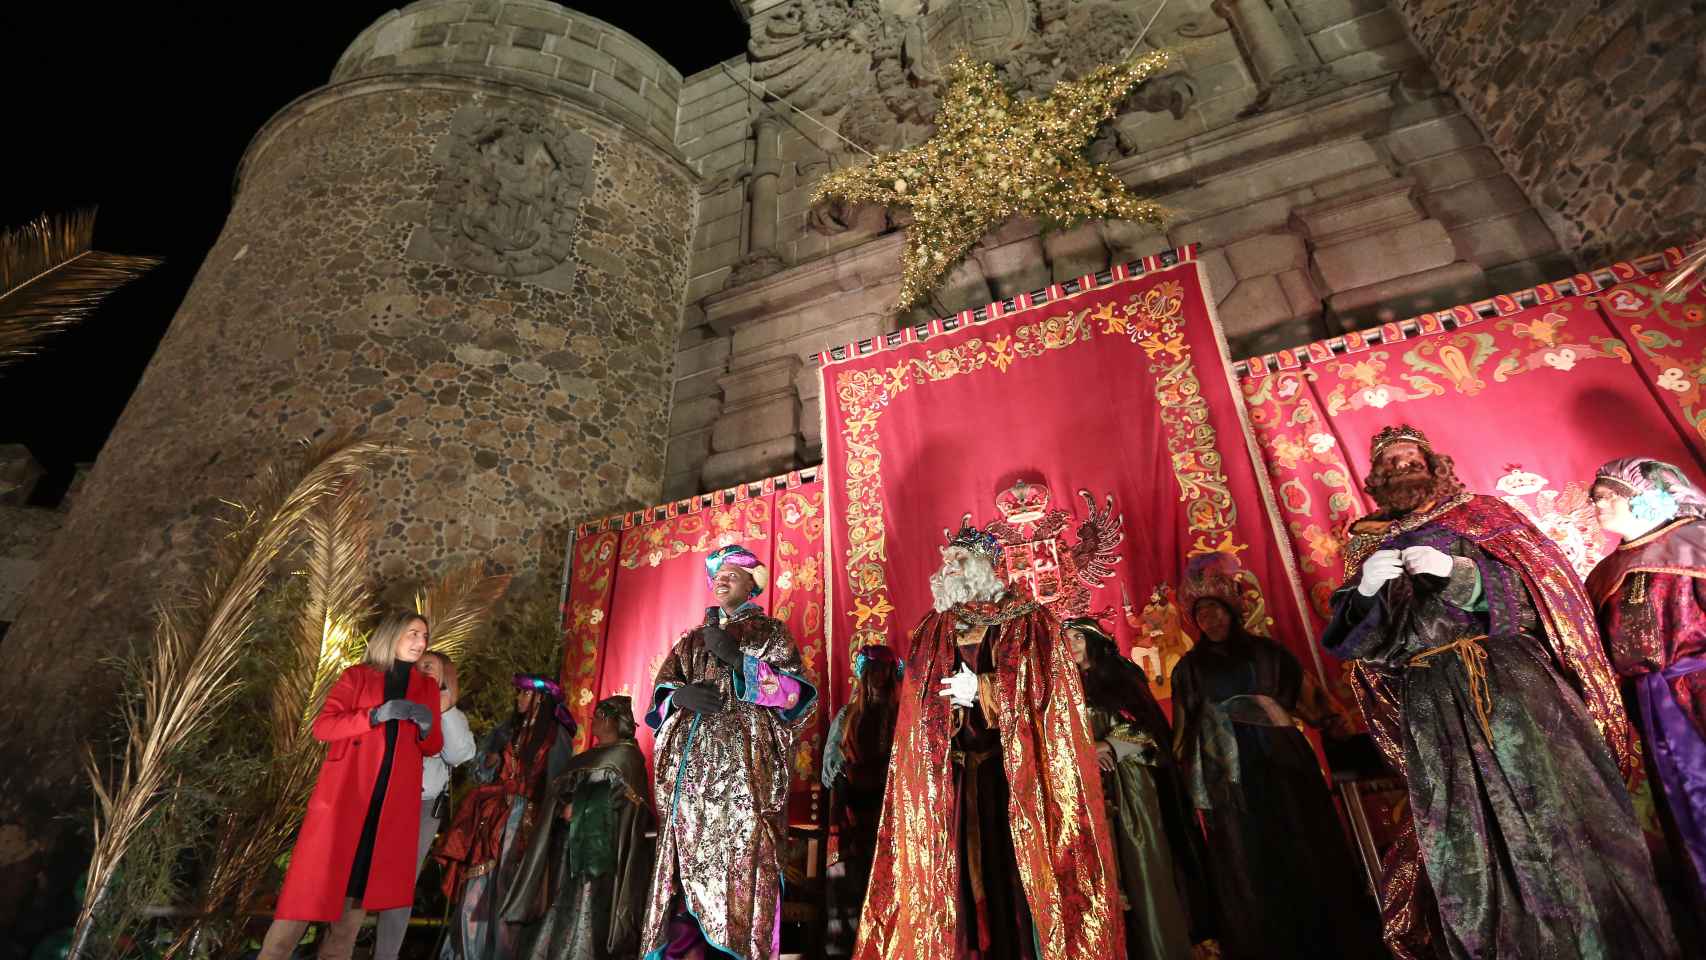 La magia de los Reyes Magos vuelve a conquistar Toledo